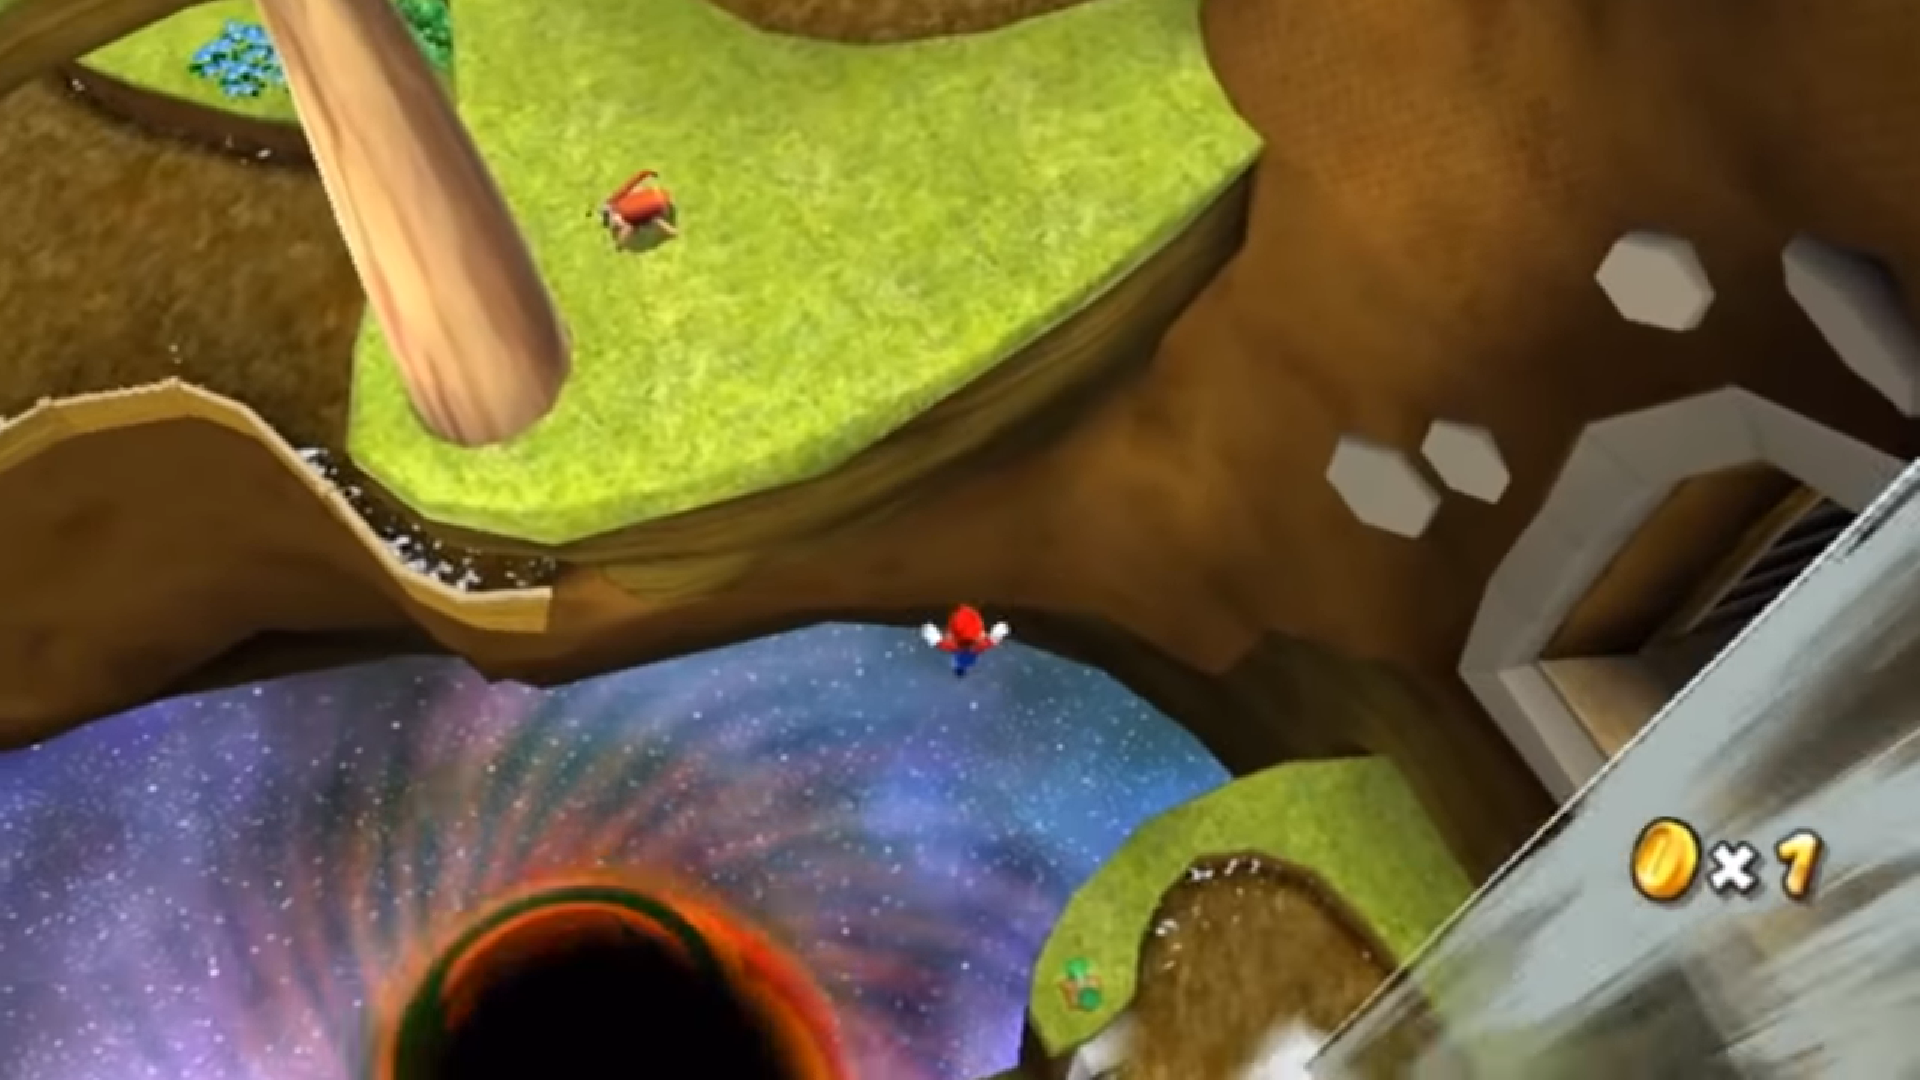 Super Mario Galaxy izdan je 2007. godine za Nintendovu konzolu Wii, a nakon 11 godine, točnije 22. ožujka 2018. godine, izdan je i za Nvidijin Shield tablet. Izdavanje igre za neku drugu platformu koja nije Nintendova, baš i nije bio običaj, no čini se kako će ta pojava postati sve češća. Premisa igre je vrlo slična ostalim 3D nastavcima Marija, no posebna je po tome što je radnja smještena u svemir, a Mario putuje između galaksija.